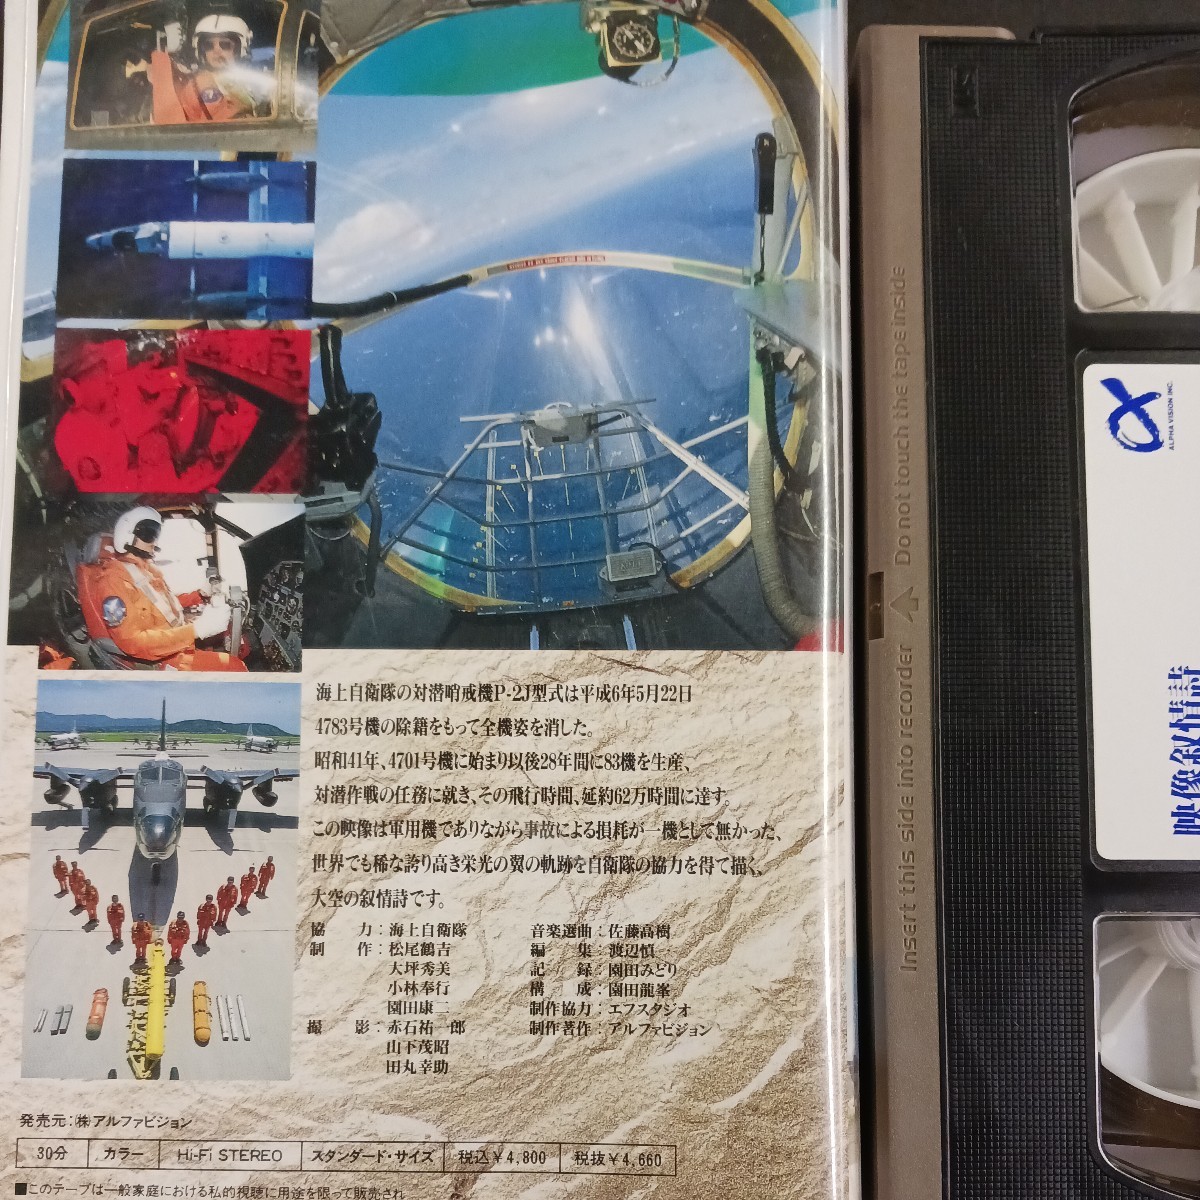 VHS_26】P-2J 映像抒情詩 栄光の翼 ビデオテープ 海自 対戦哨戒機の画像2